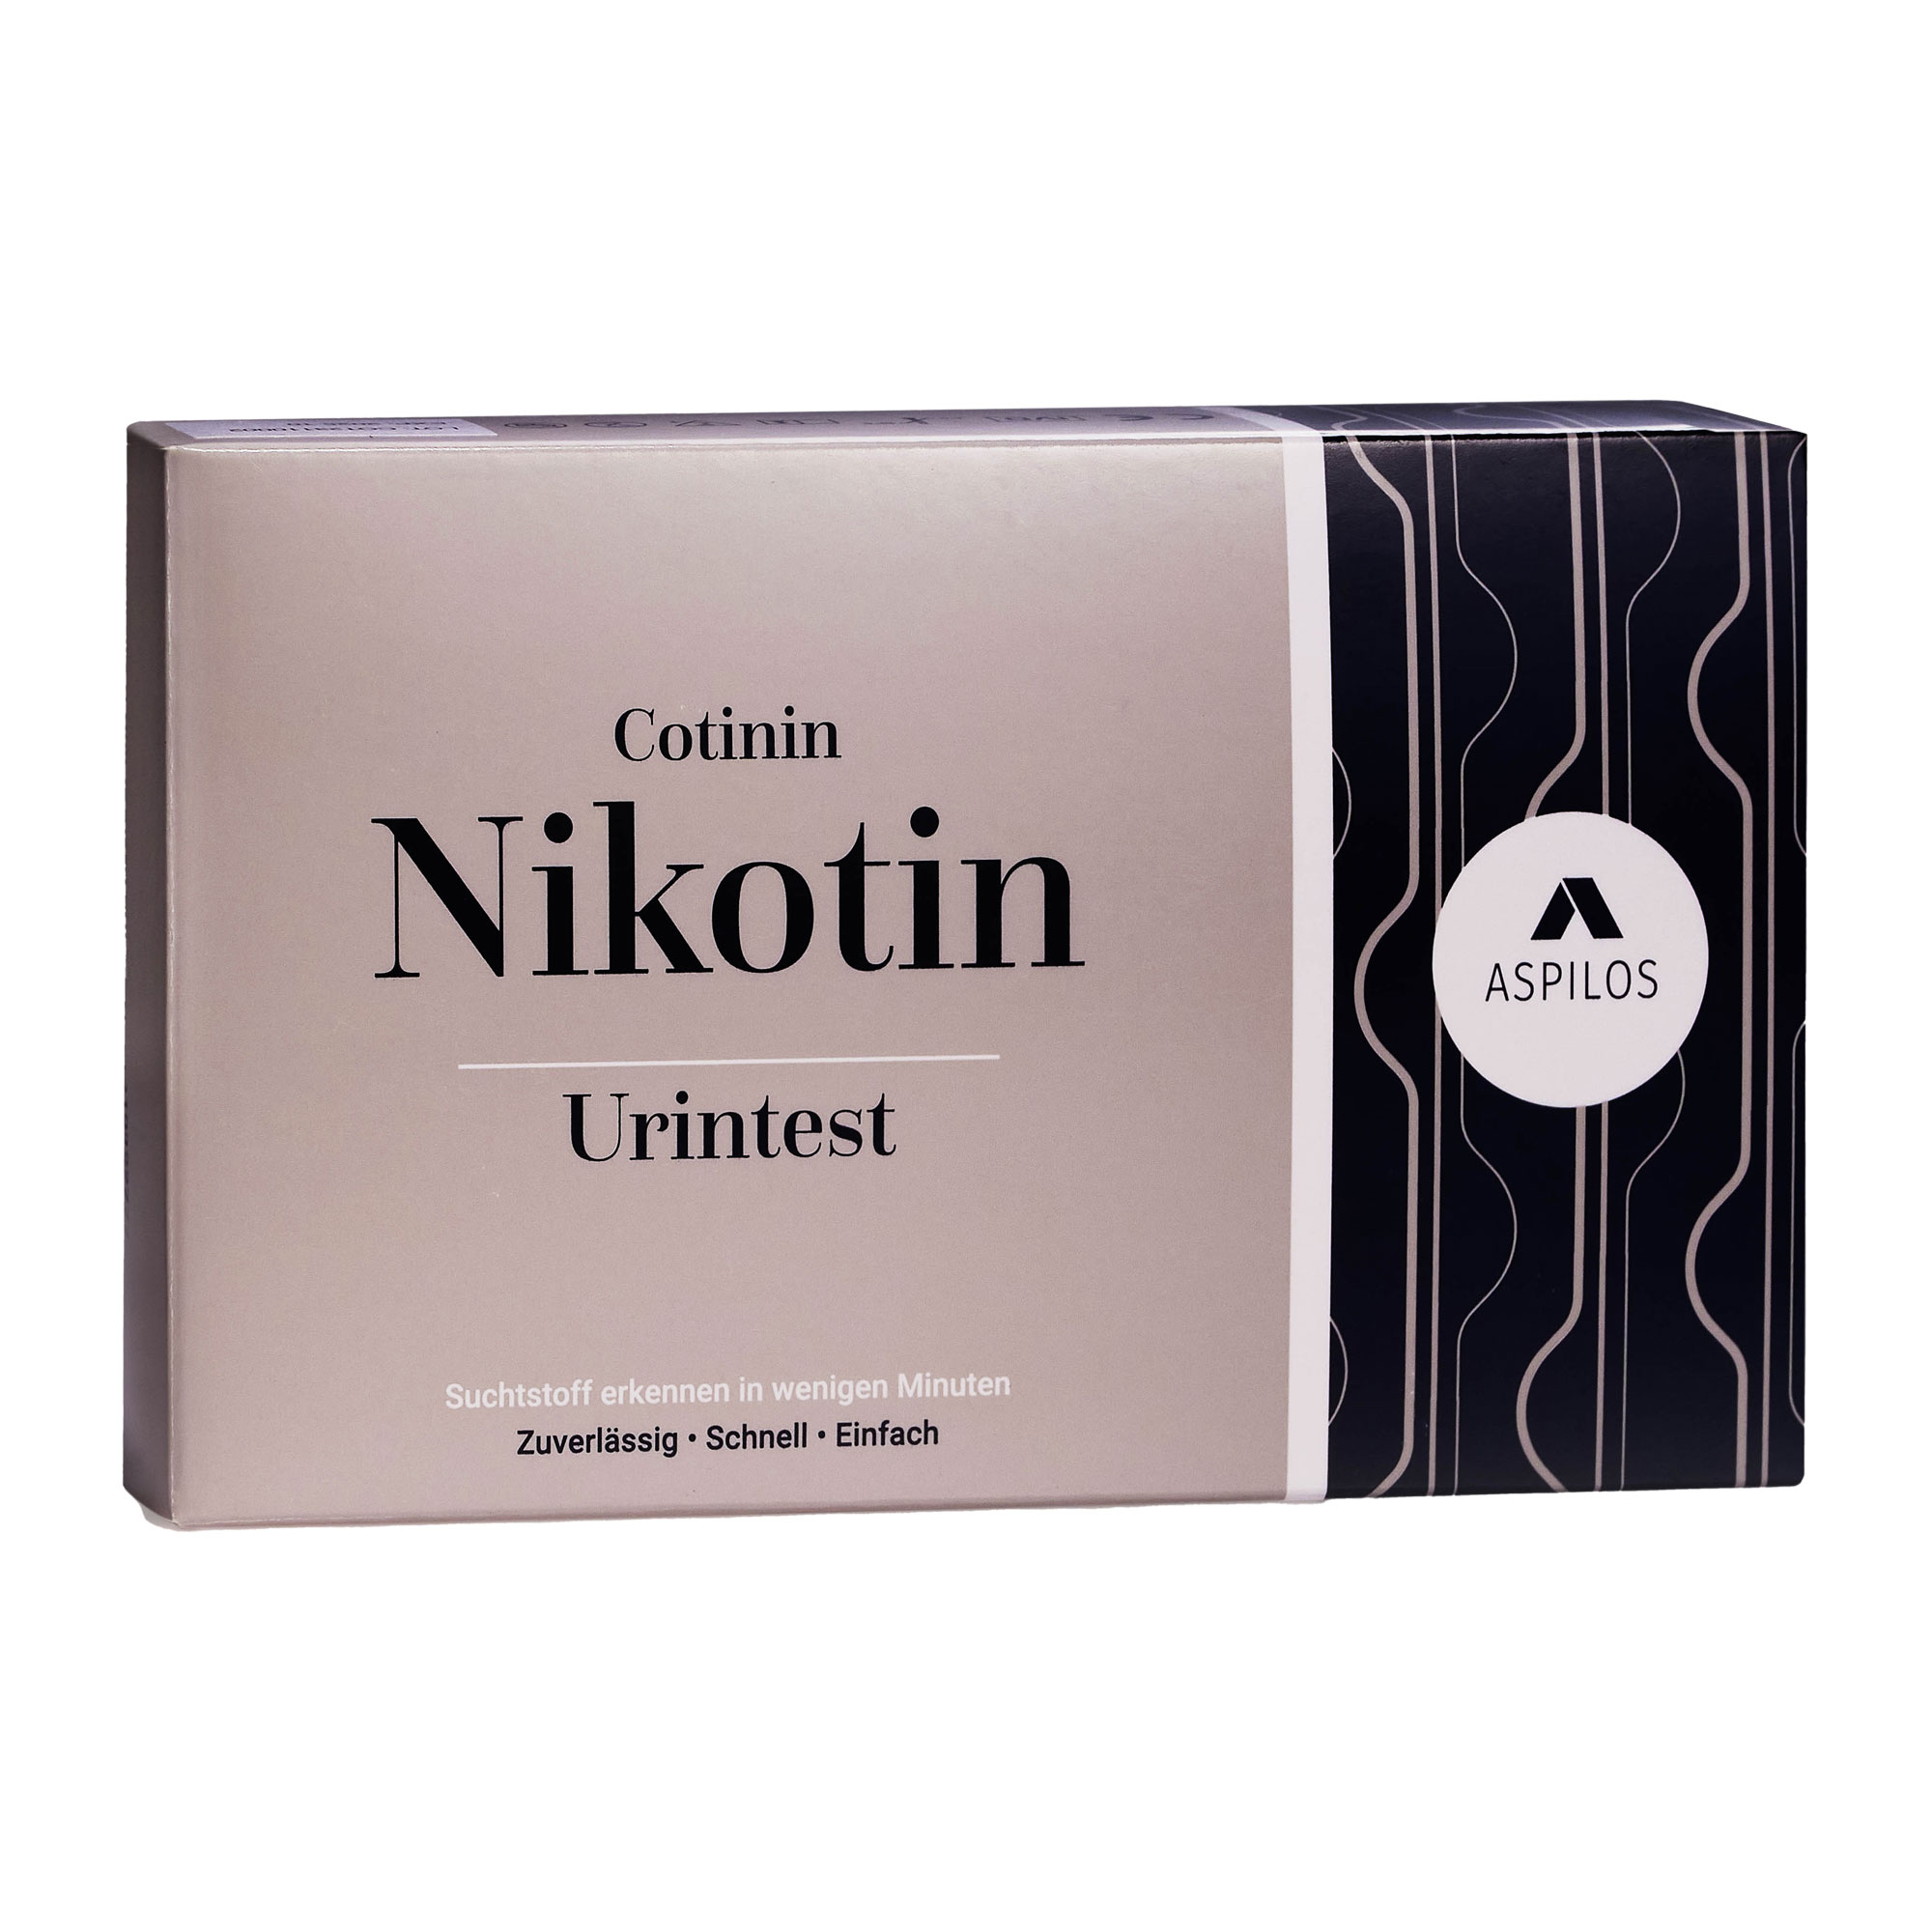 Schnelltest für den qualitativen Nachweis von Cotinin (Nikotin-Abbauprodukt) im menschlichen Urin. Ergebnis in 5 Minuten.